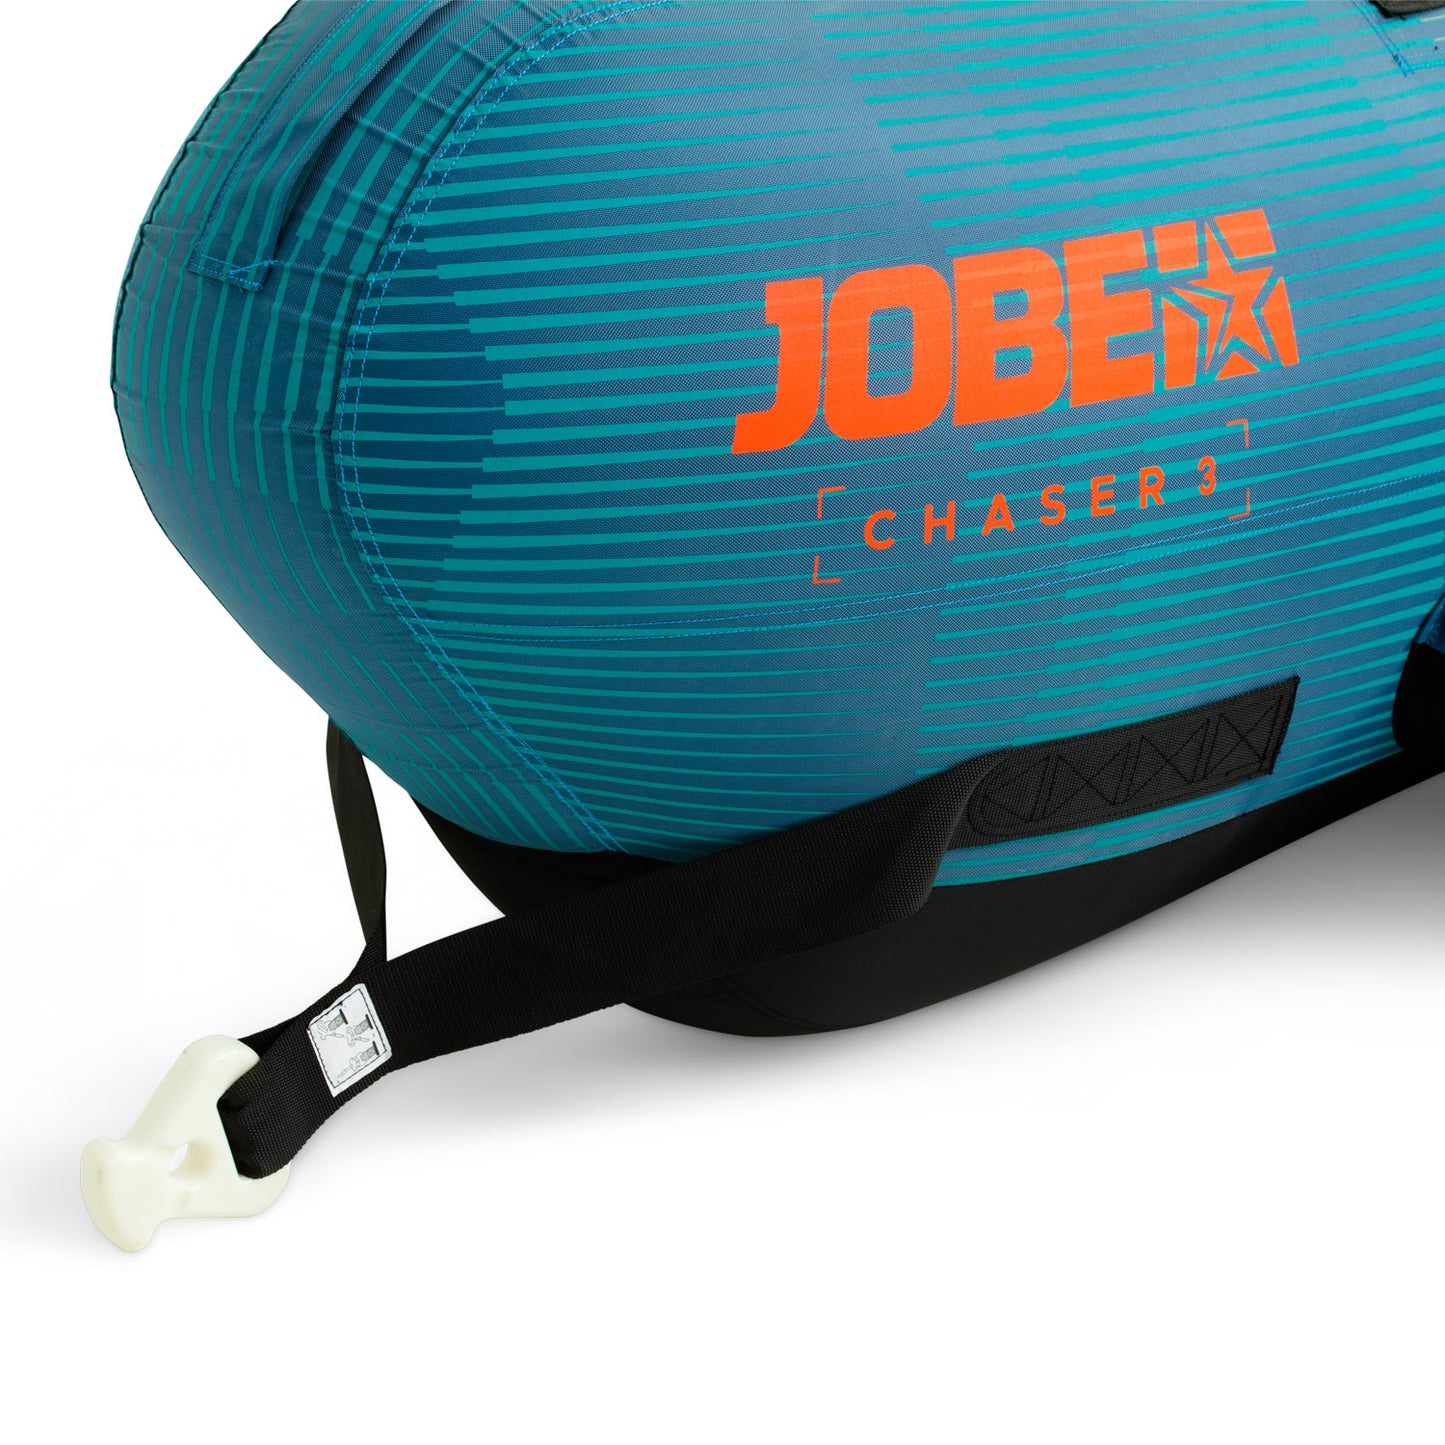 【予約受付中】Jobe Chaser Towable 3P チェイサー トーイングチューブ 3人乗 230324001